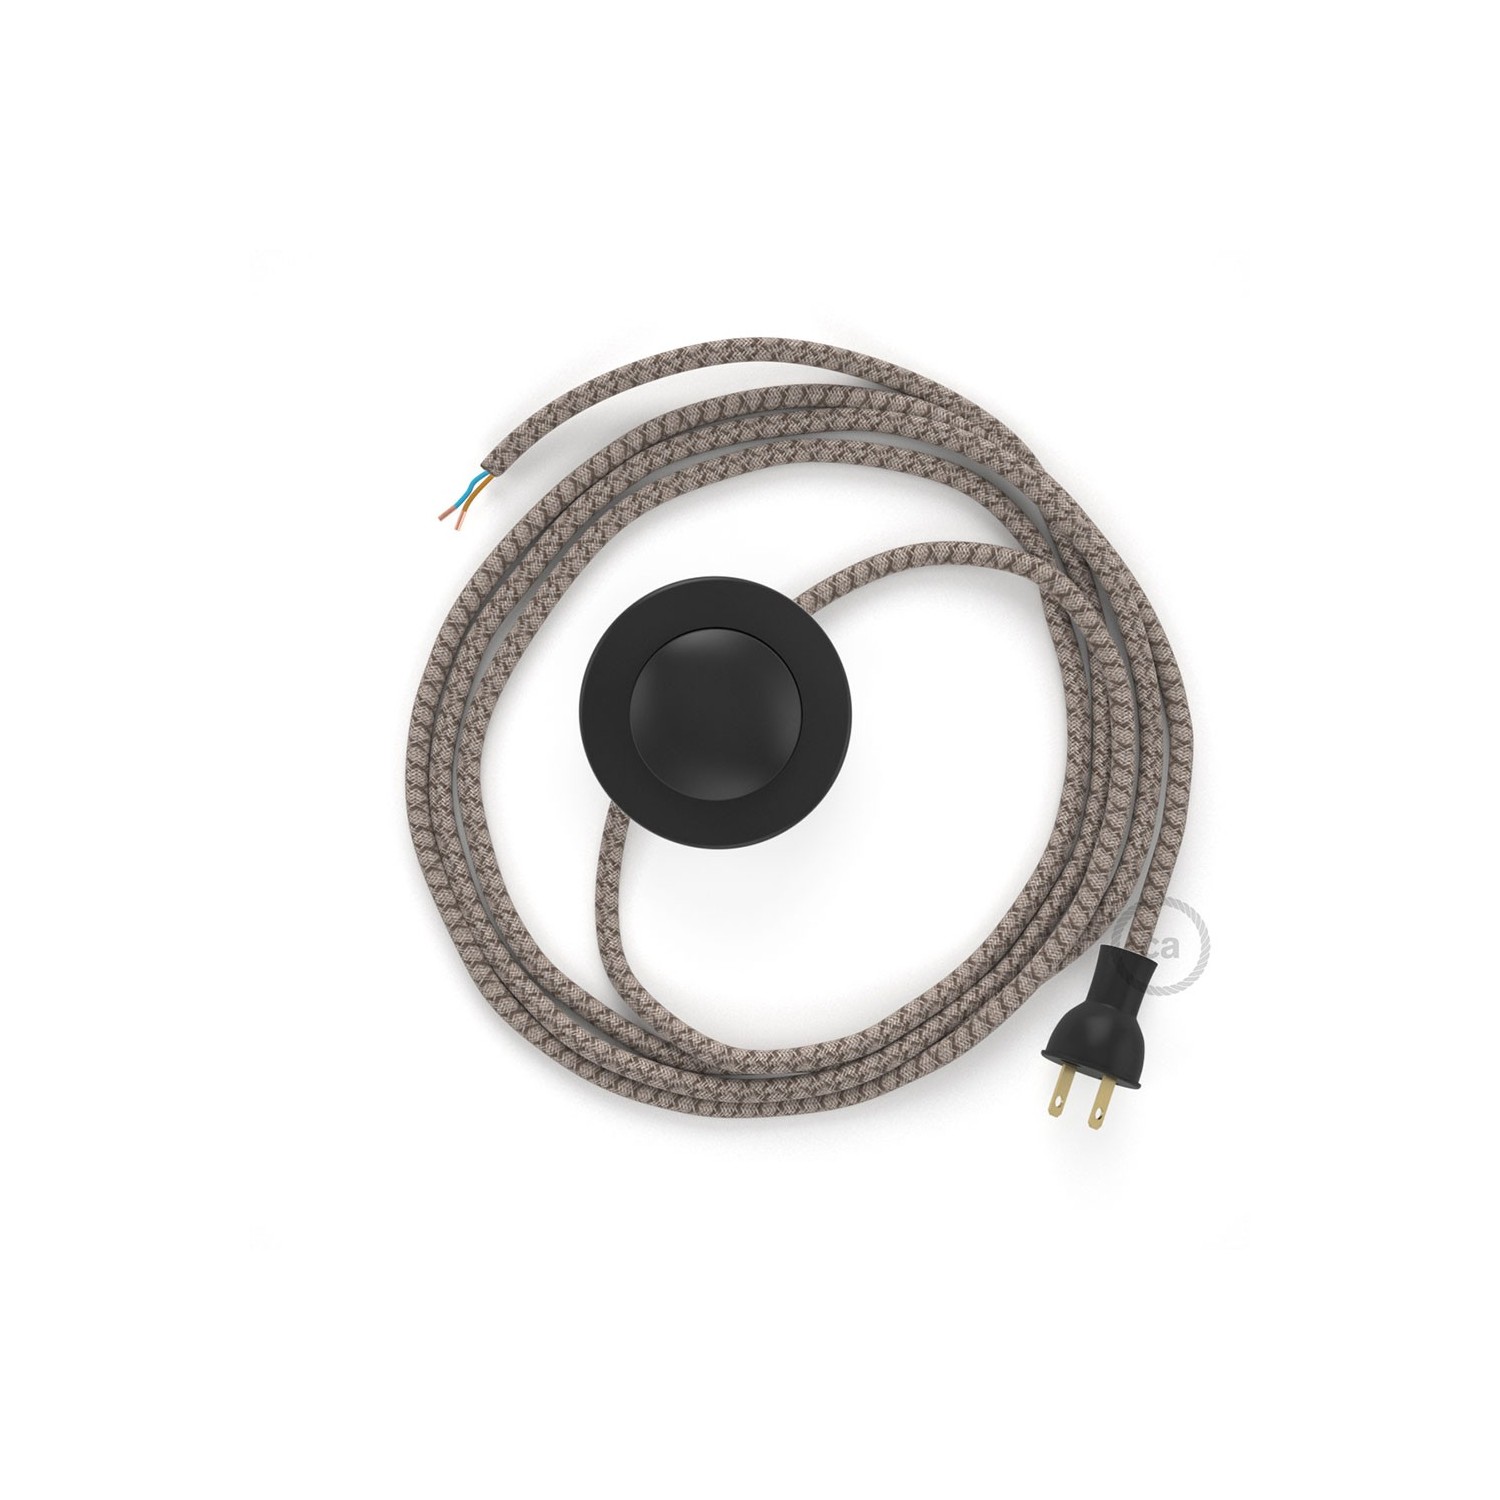 Cableado para lámpara de piso, cable RD63 Rombo Corteza 3 m. Elige tu el color de la clavija y del interruptor!